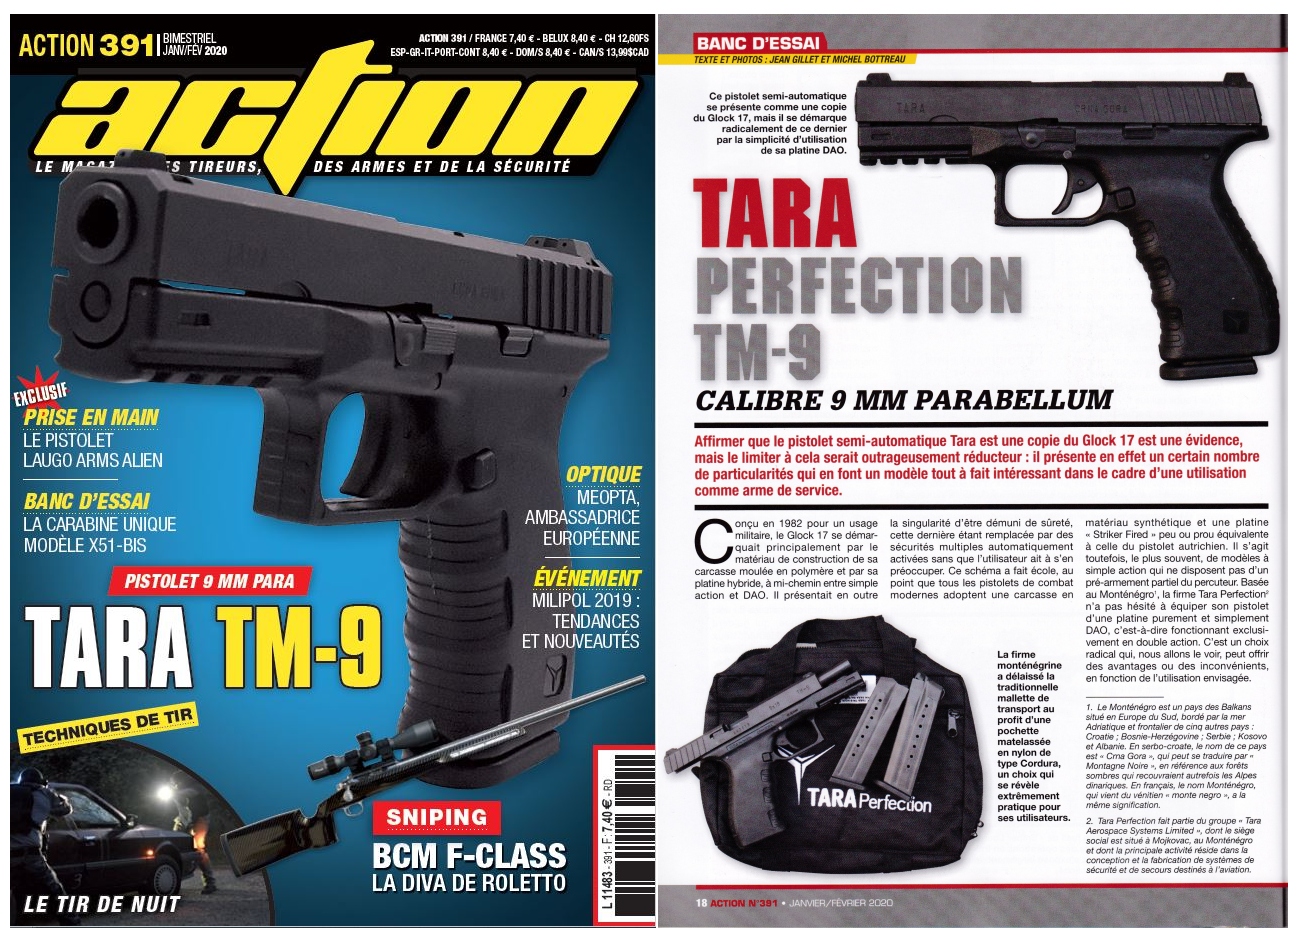 Le banc d’essai du pistolet TARA Perfection TM-9 a été publié sur 6 pages dans le magazine Action n°391 (janvier-février 2020). 